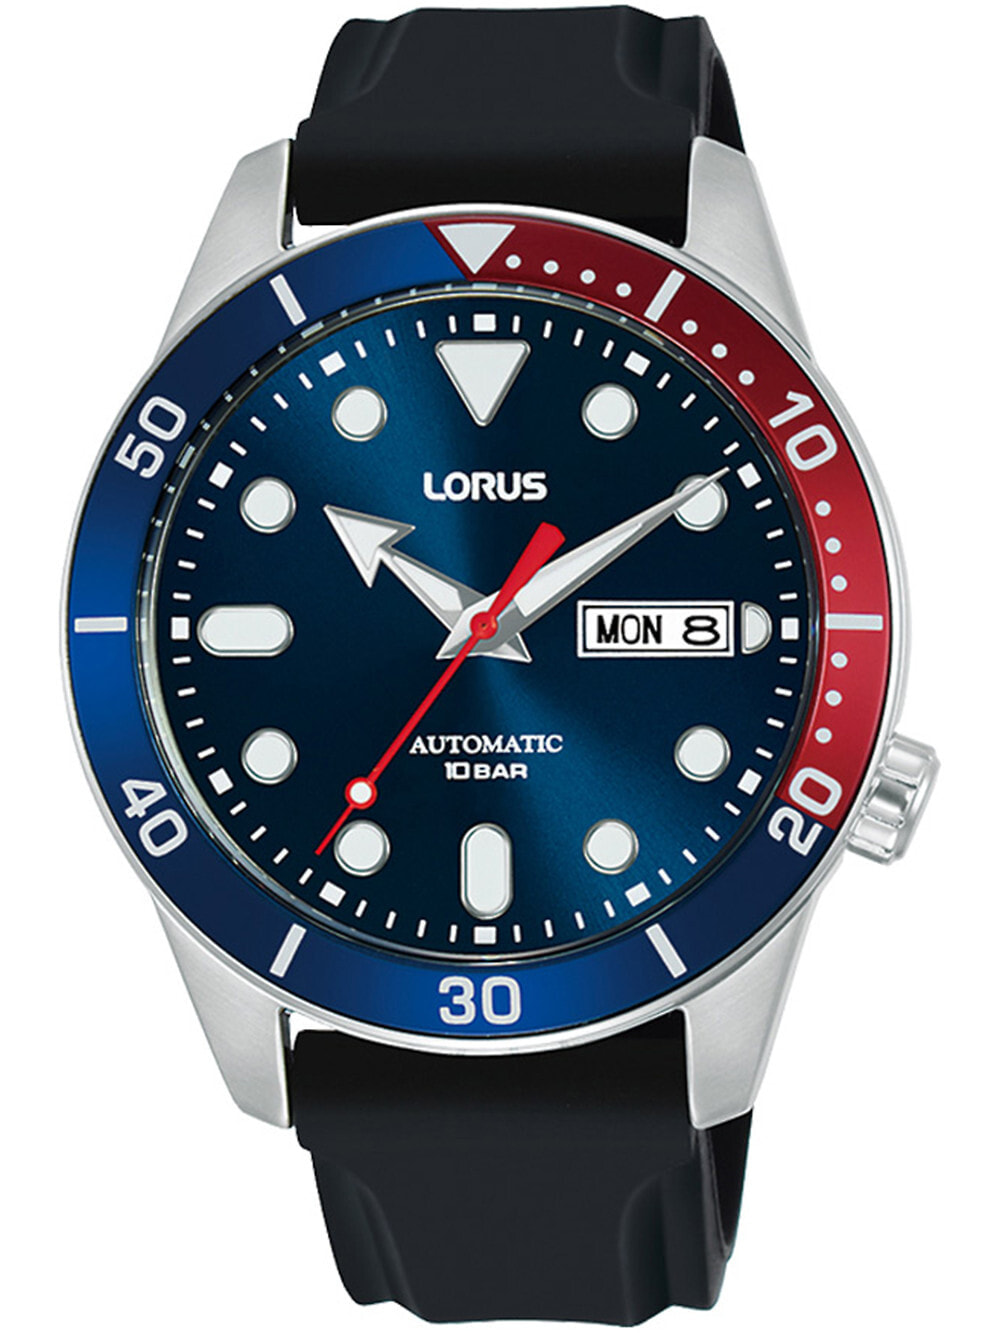 Мужские наручные часы с черным силиконовым ремешком  Lorus RL451AX9 automatic mens 42mm 10ATM